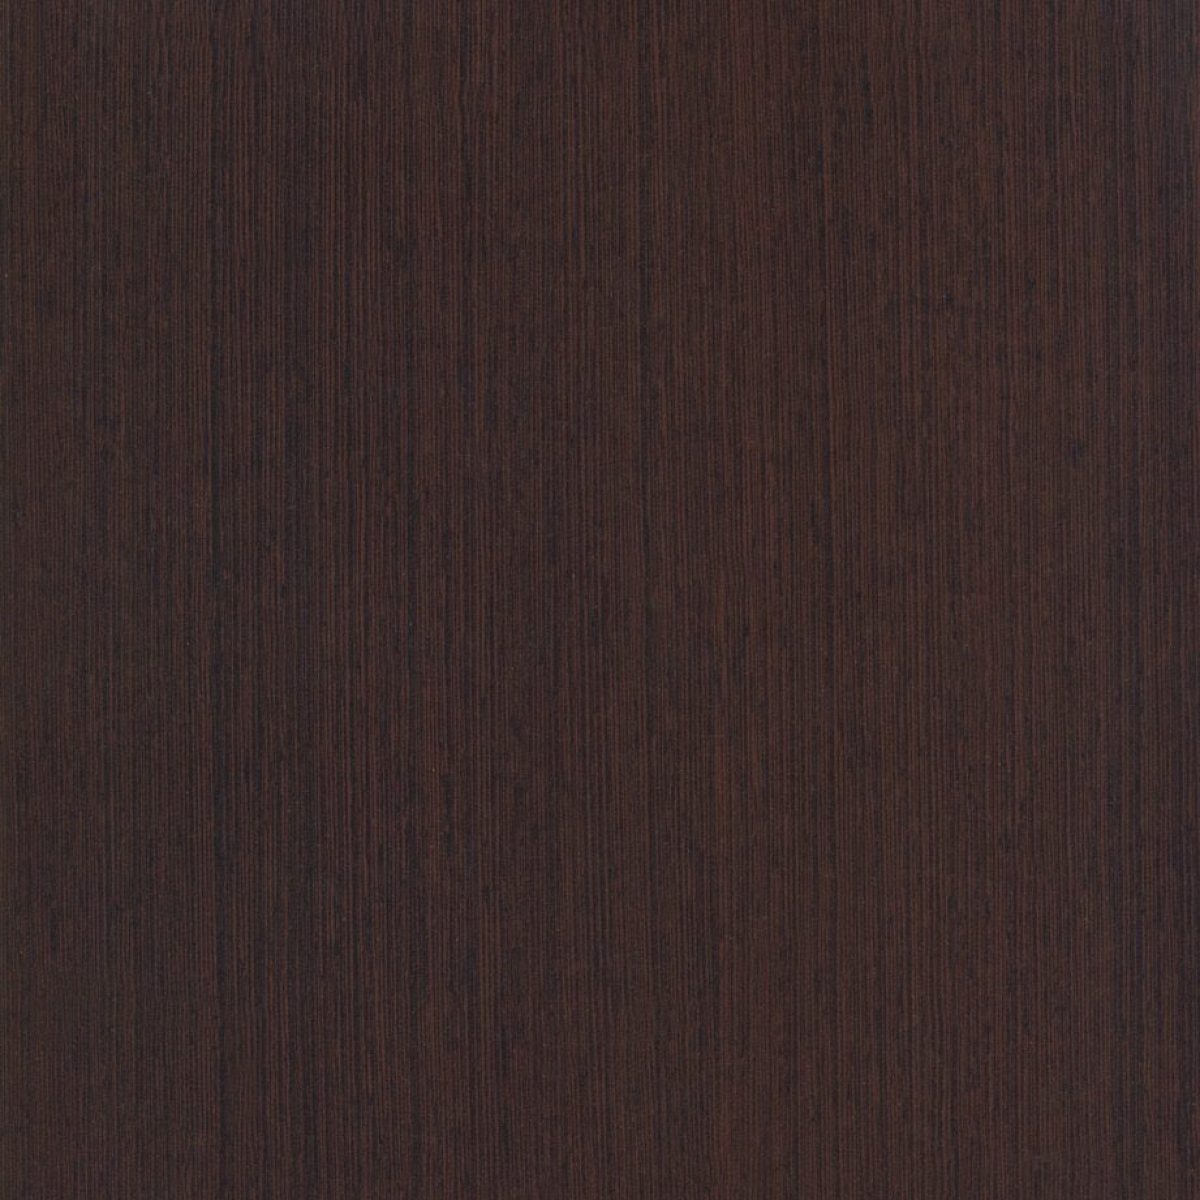 WENGUE - Tamaños (1,22 x 2,44m)  |  Espesor (0.7mm)